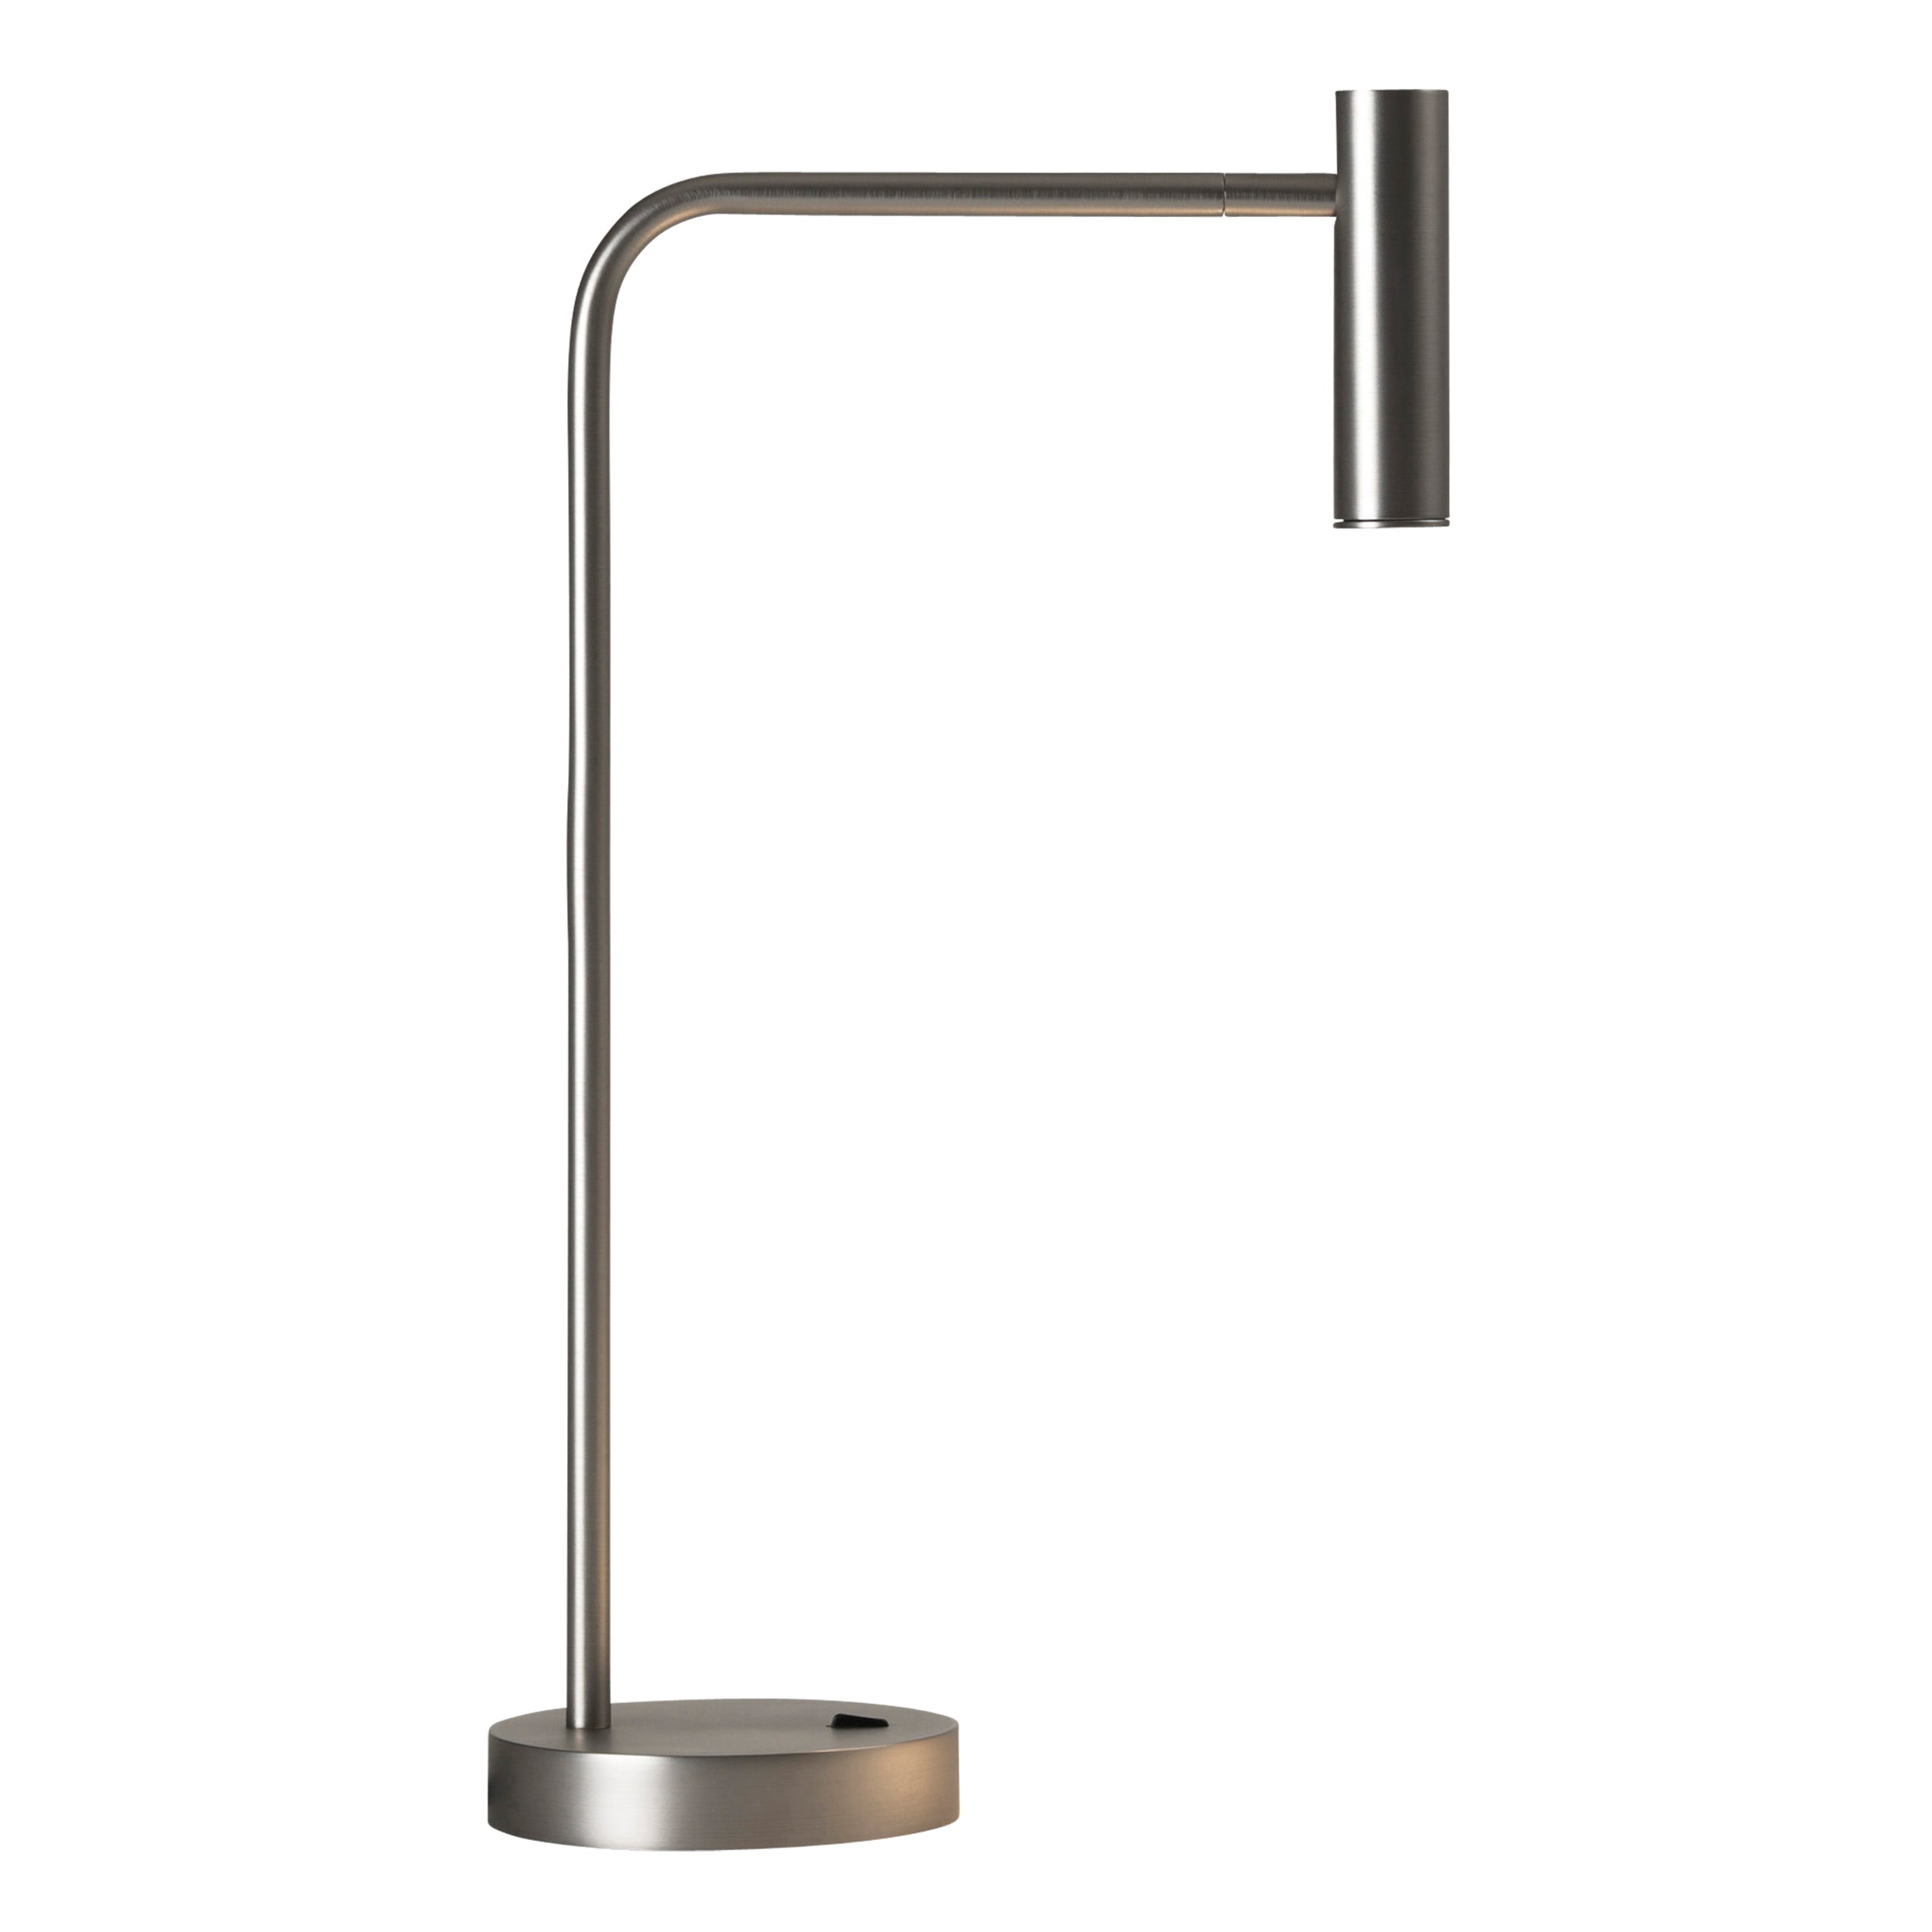 Bordlampe i stålfarvet aluminium med bøjet hals, rund fod og et aflangt, rundt, justerbart hoved.